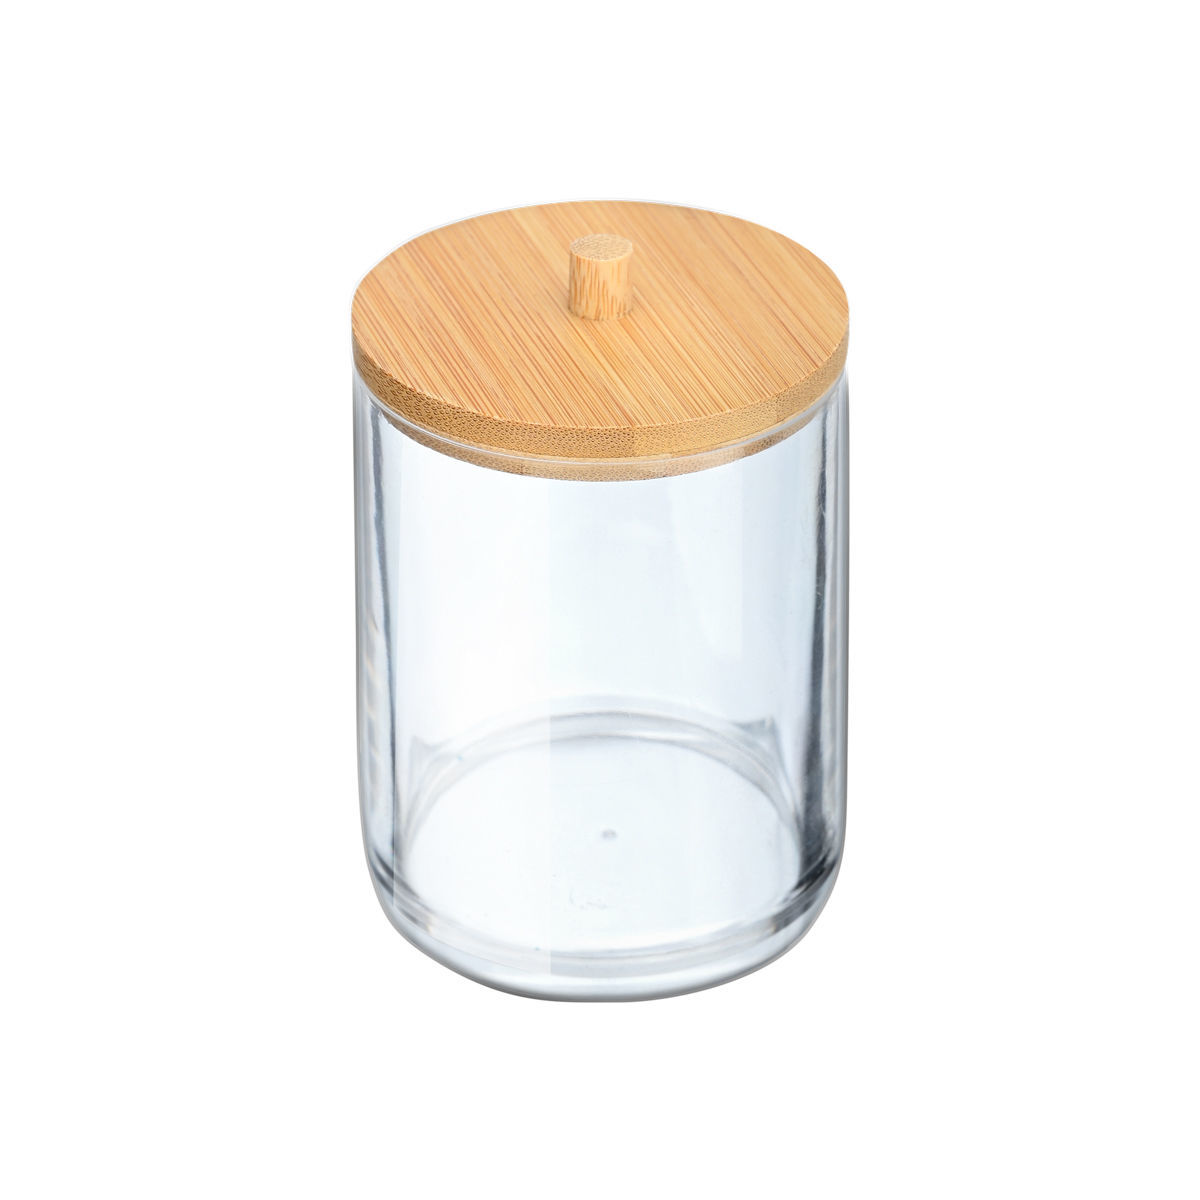 Κουτί Αποθήκευσης Για Δίσκους Ντεμακιγιάζ Με Καπάκι Πλαστικό-Bamboo Essentials Estia 7x7x12εκ. 02-17651 (Υλικό: Πλαστικό) – estia – 02-17651